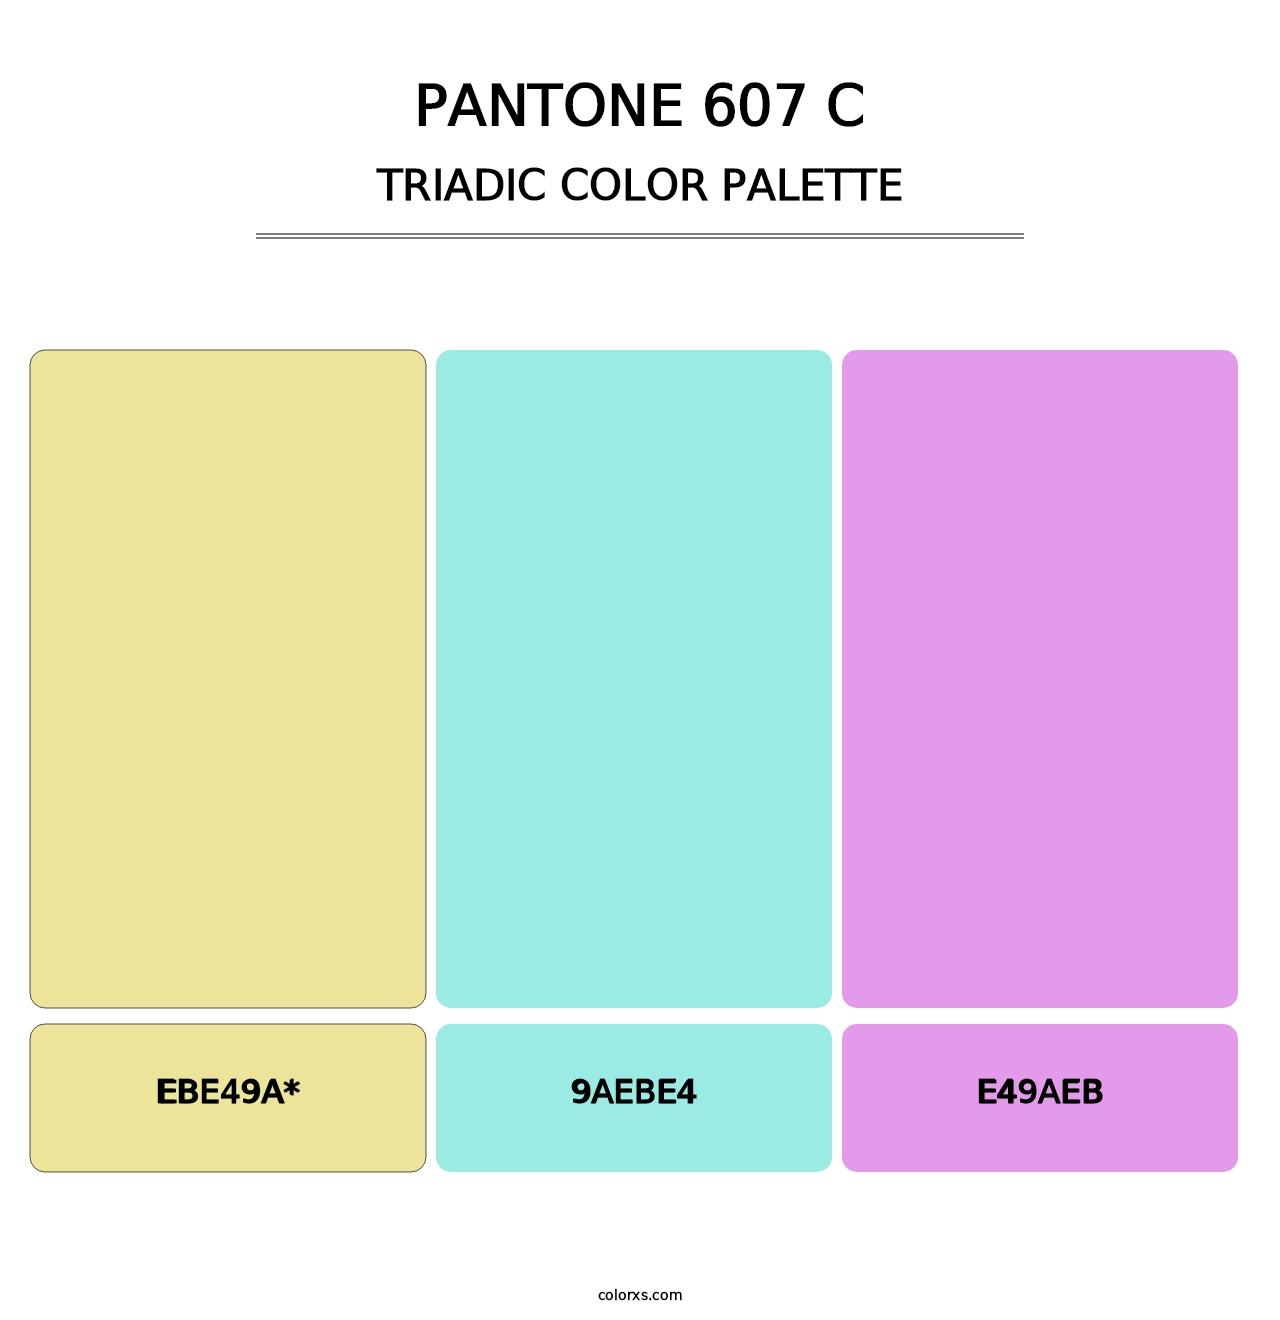 PANTONE 607 C - Triadic Color Palette